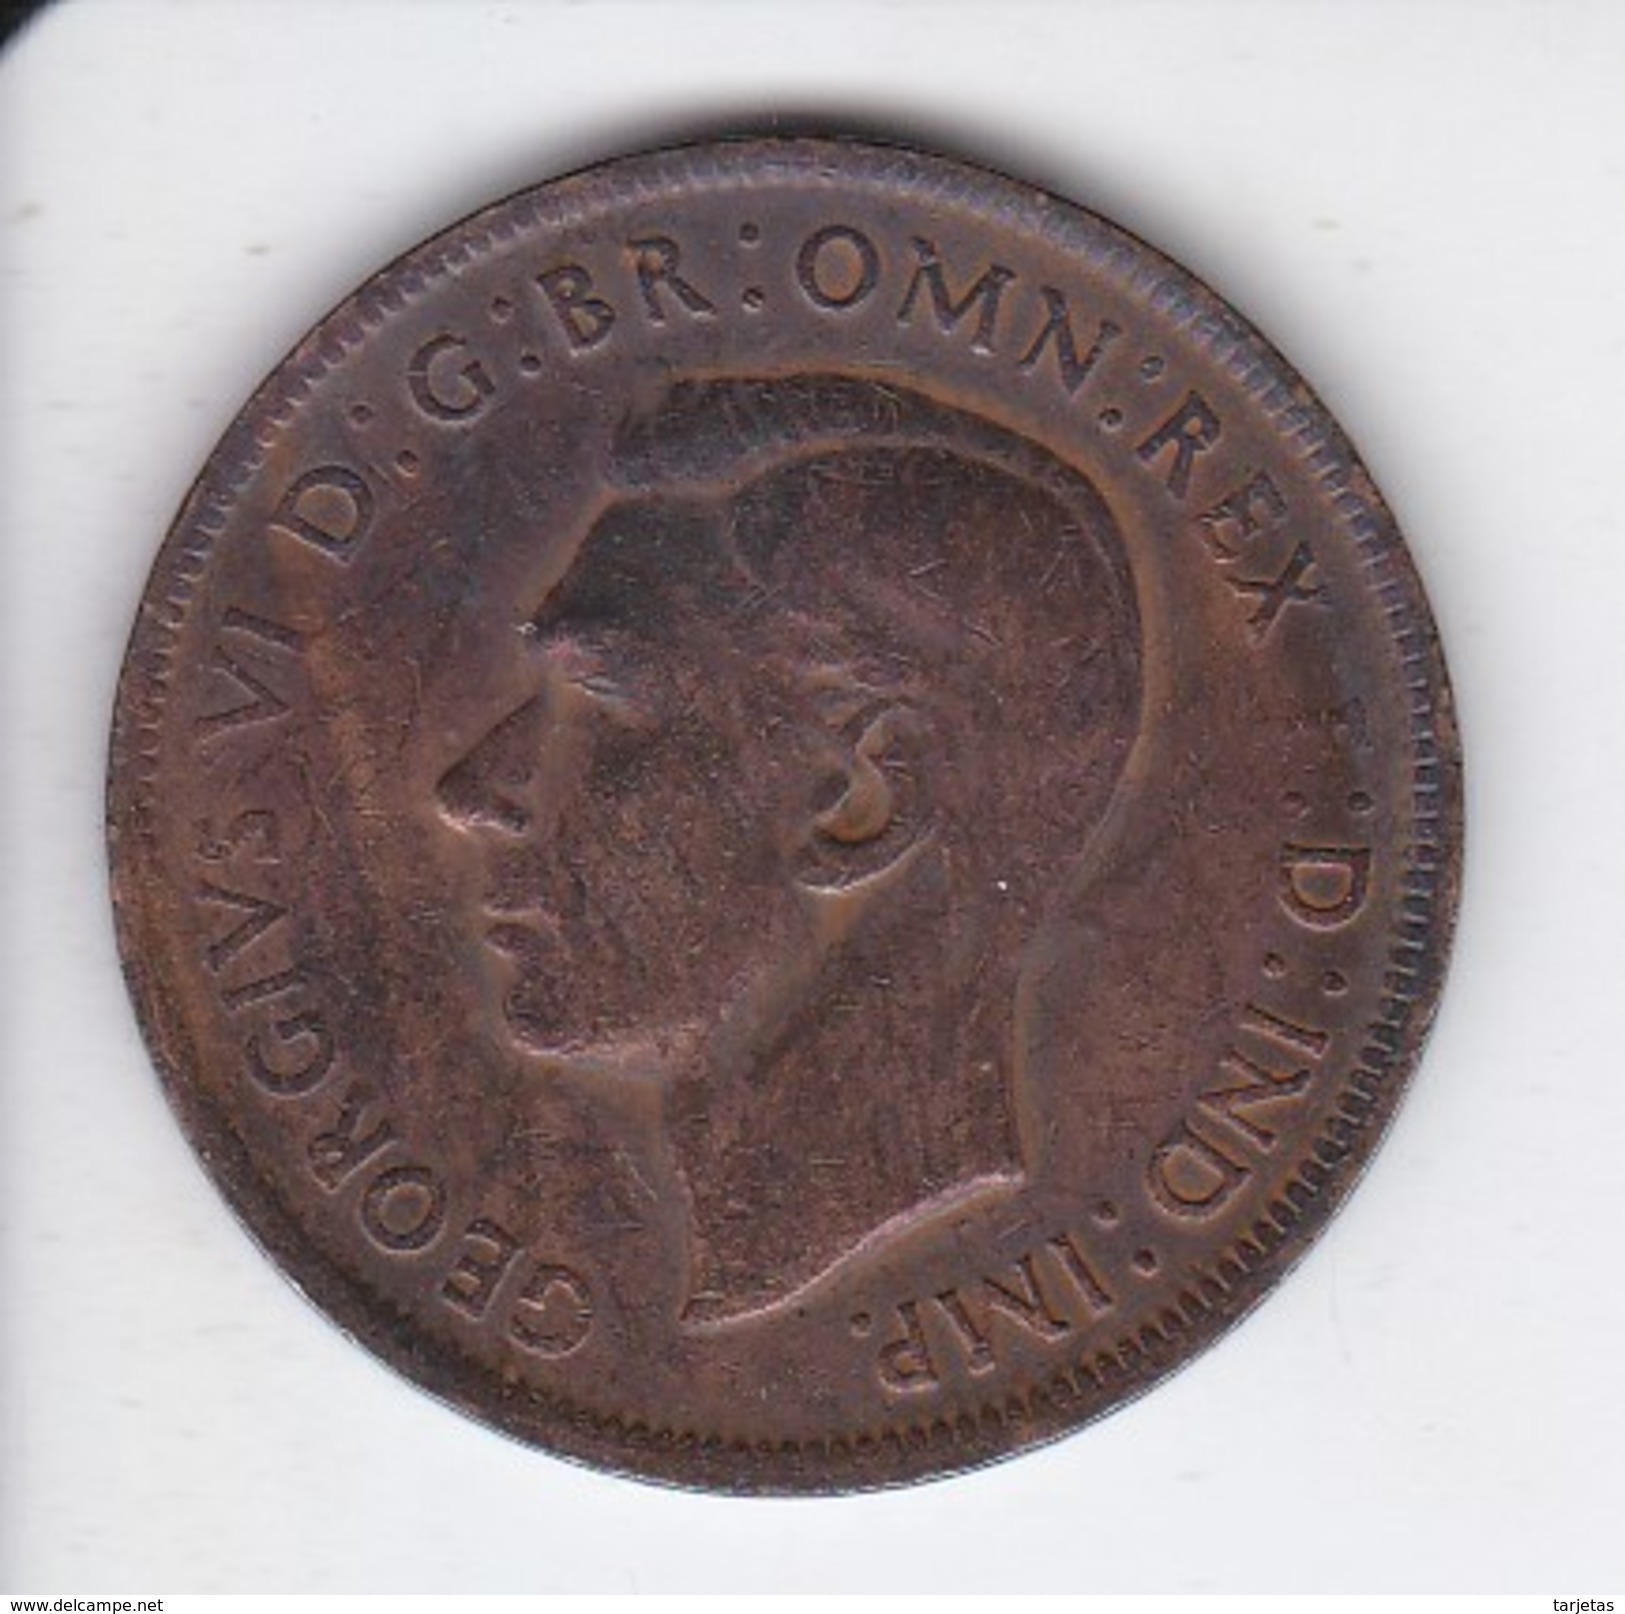 MONEDA DE AUSTRALIA DE 1 PENNY DEL AÑO 1941 CANGURO (KANGAROO) - Penny